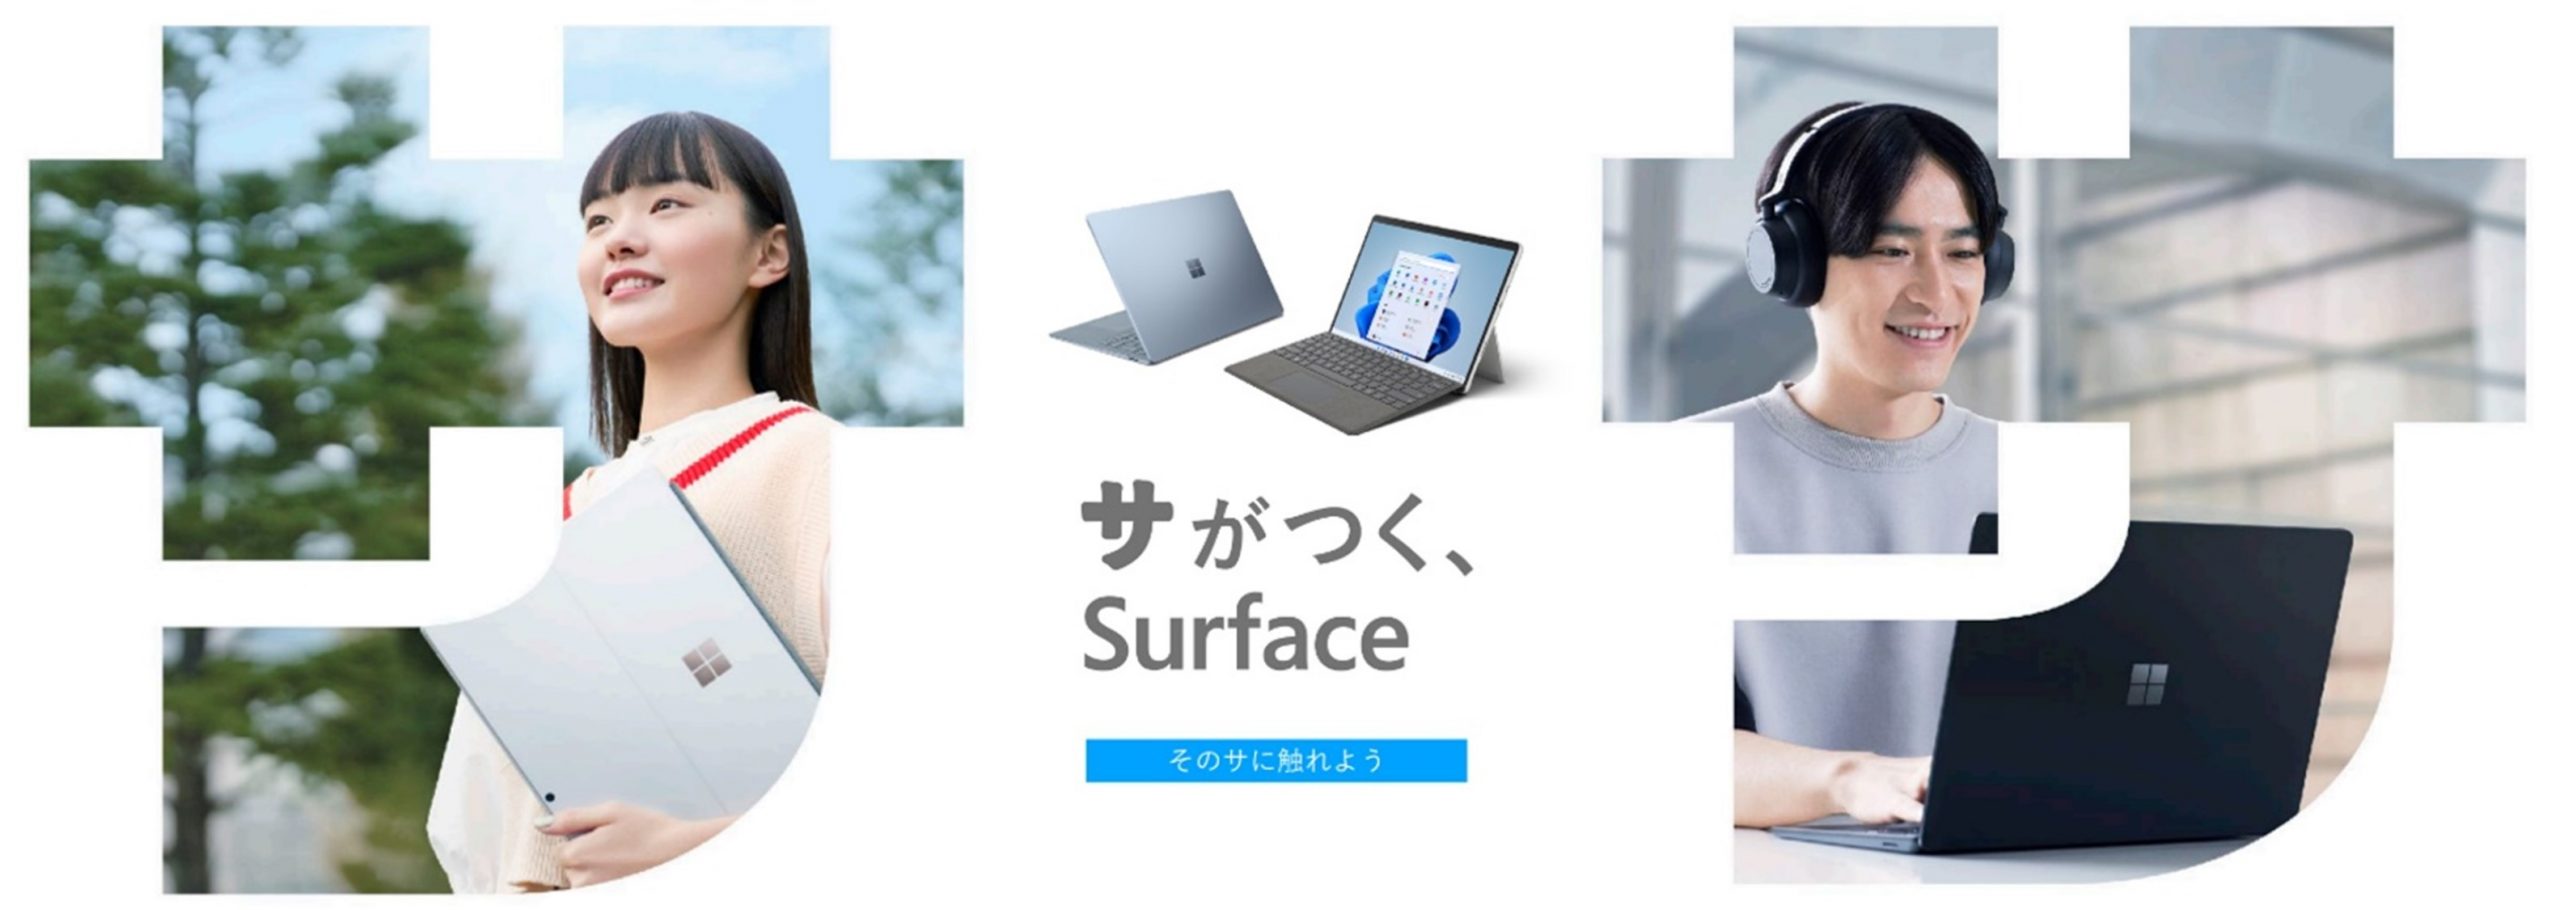 Surface の新大学生向けキャンペーン「サがつく、Surface」本日開始 